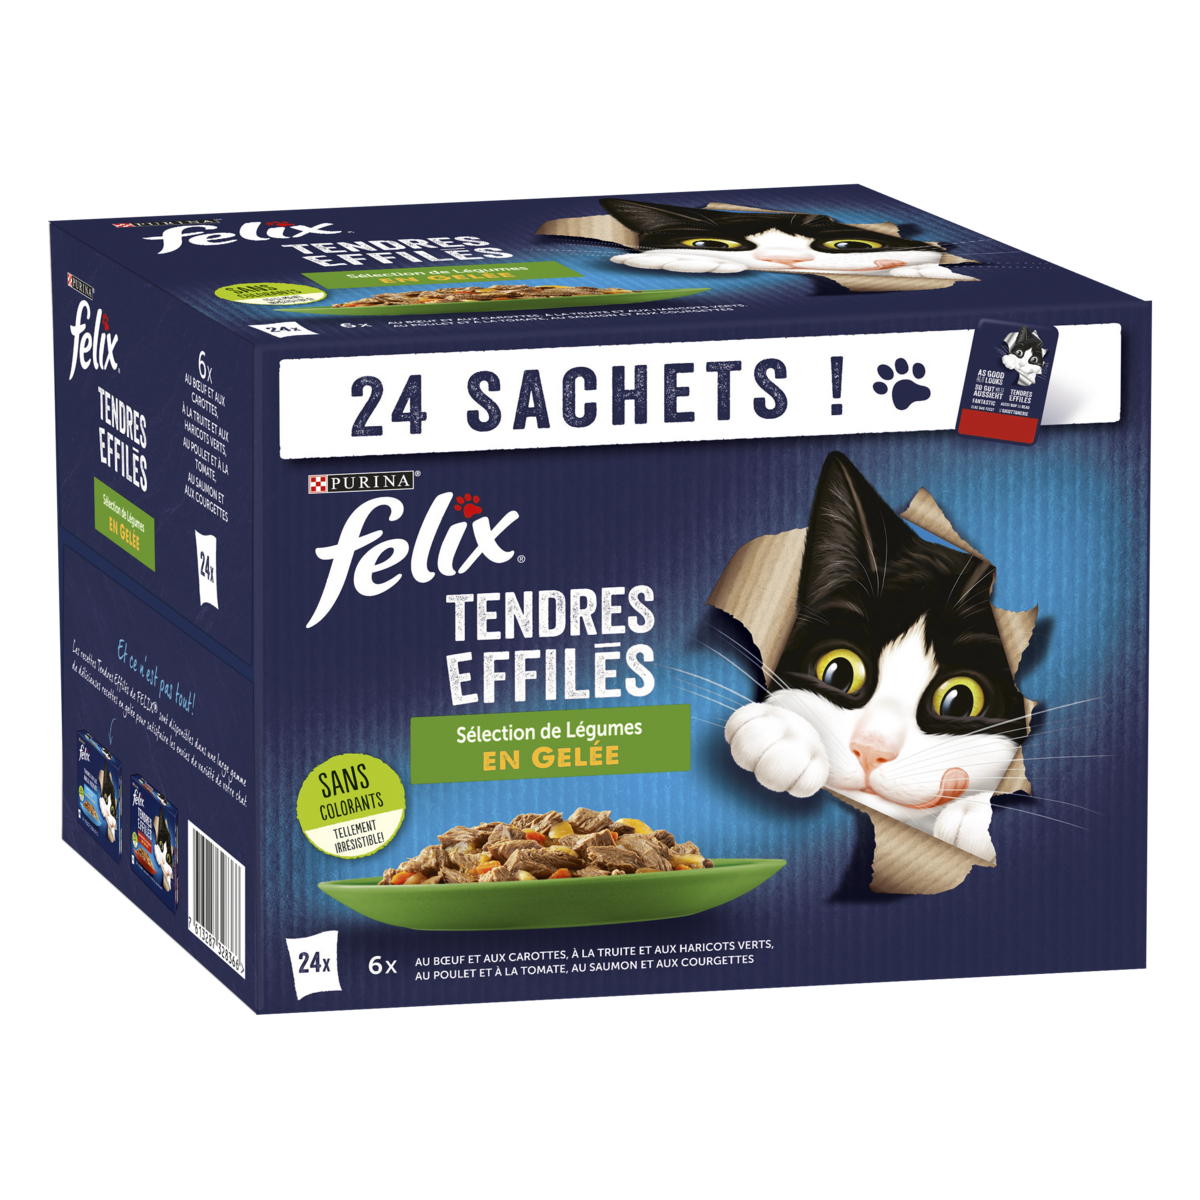 Felix Nourriture pour chat Sensations en sauce Sélection de la